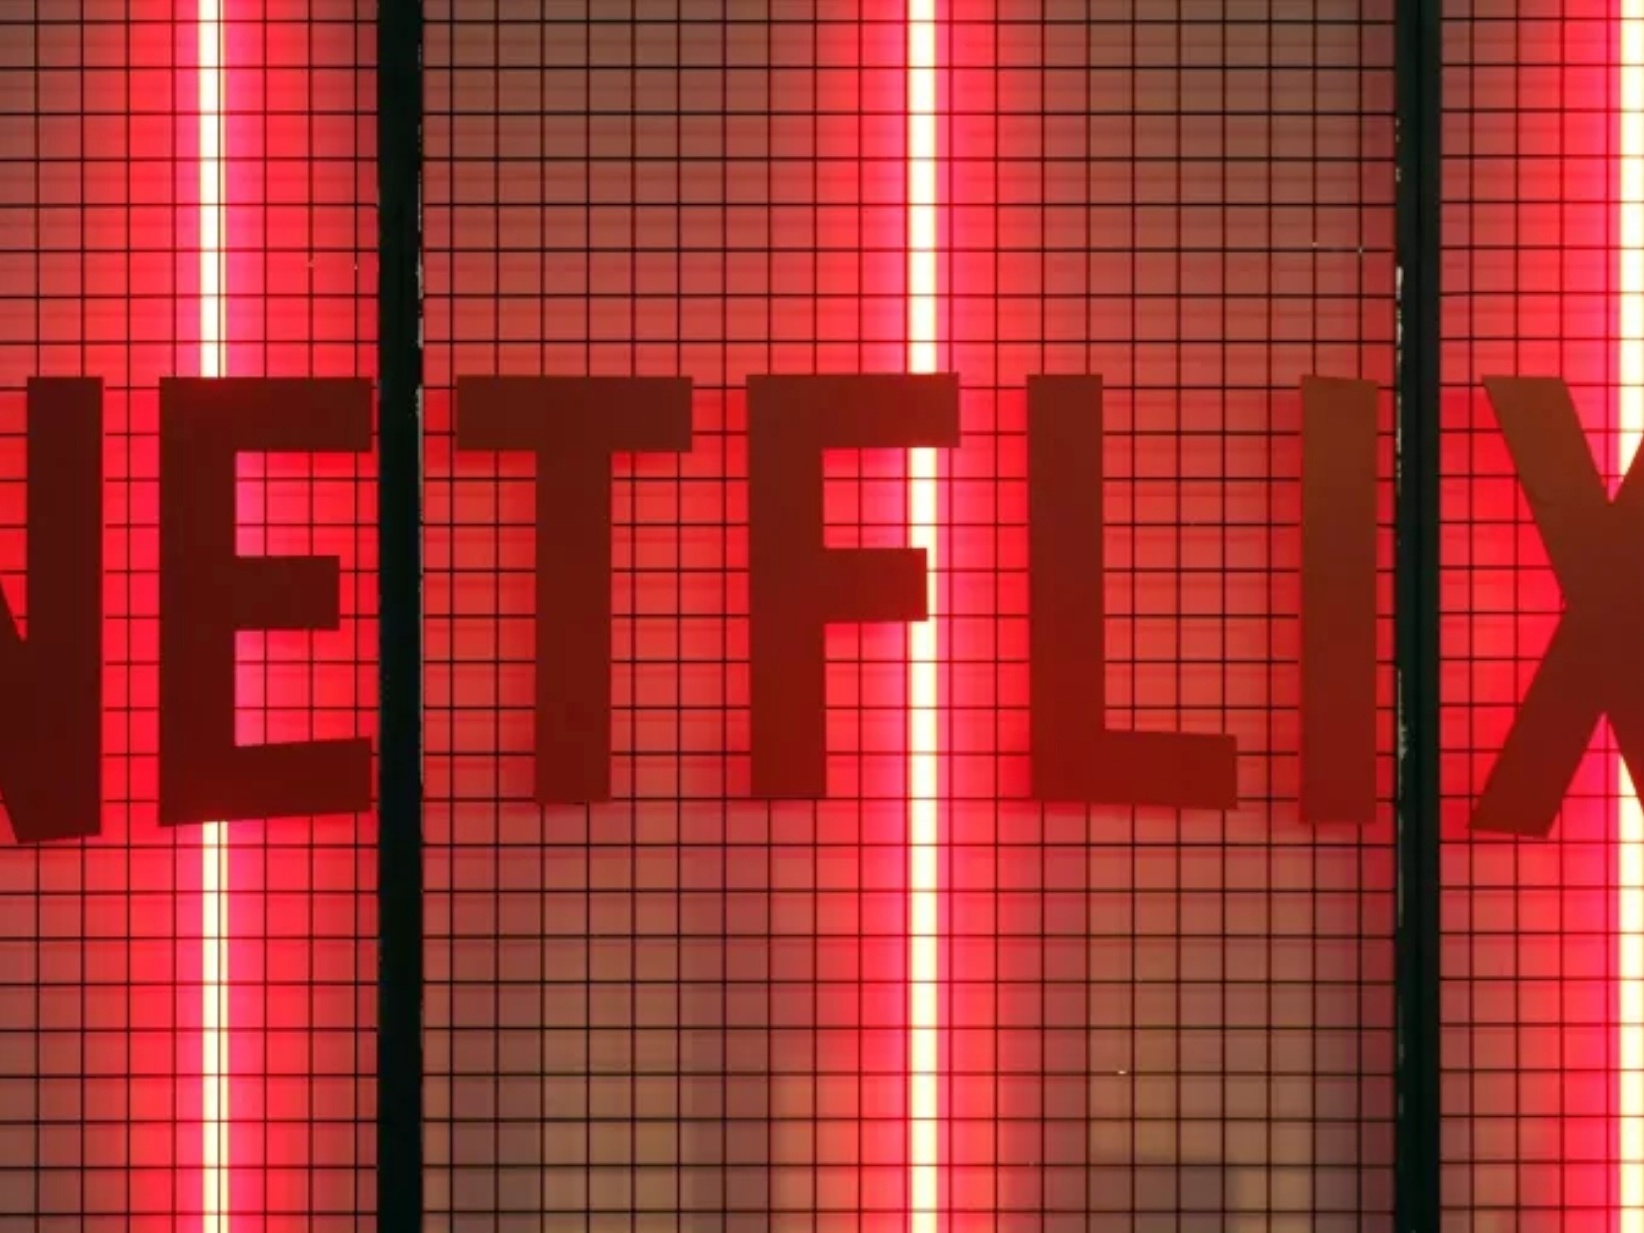 Brasil ajuda e Netflix tem lucro bilionário no primeiro trimestre